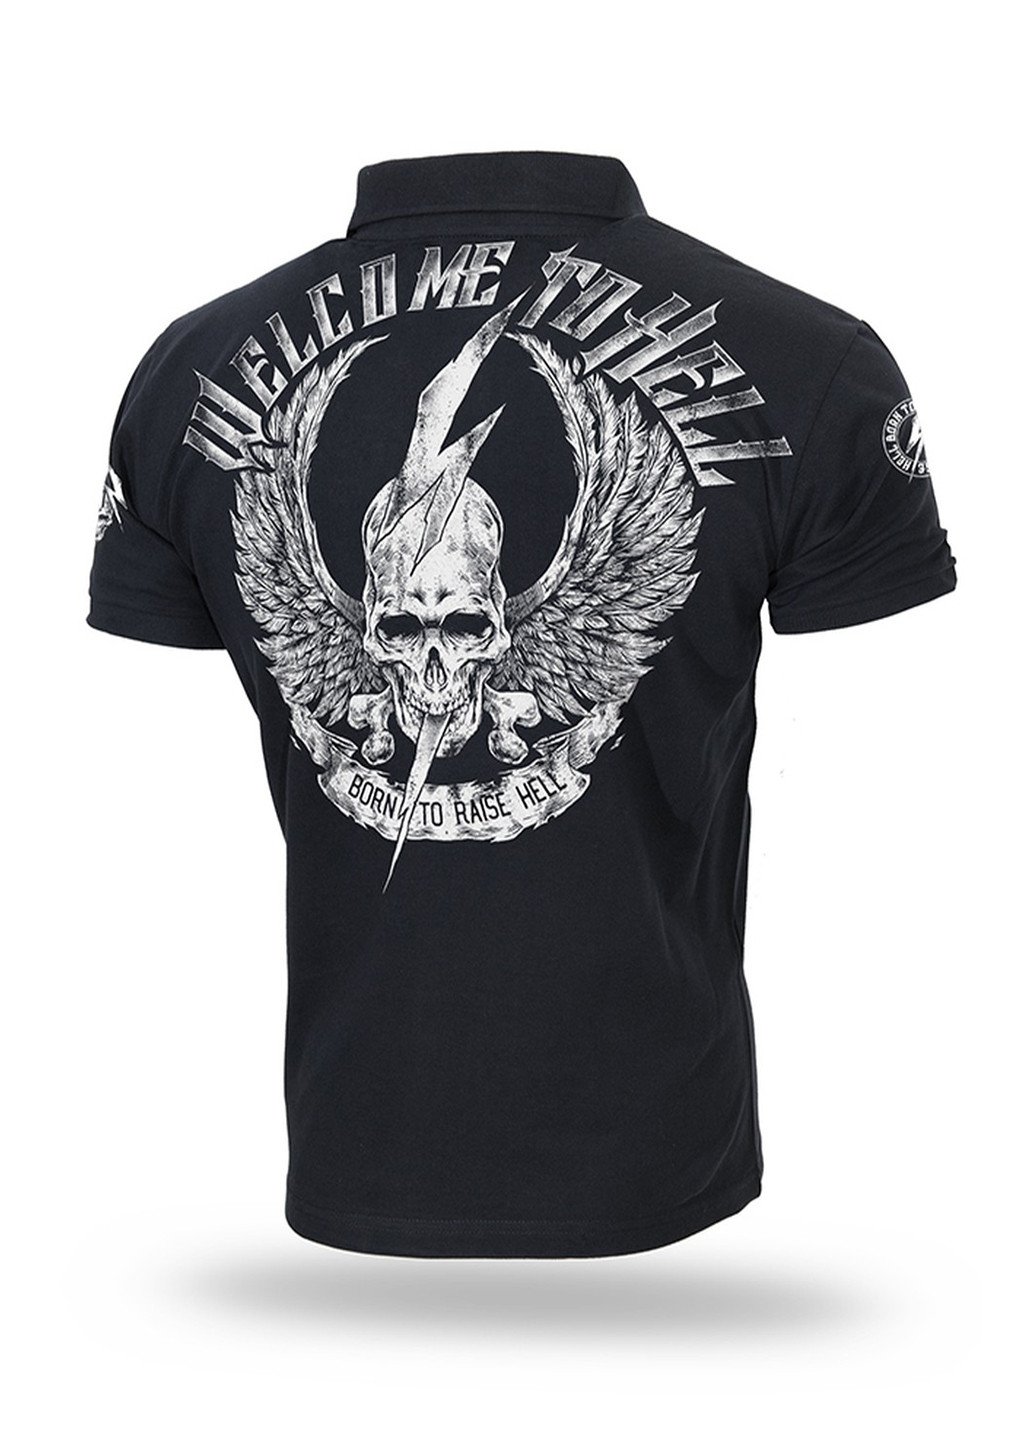 Черная футболка-футболка поло dobermans welcome to hell ii tsp156bk для мужчин Dobermans Aggressive